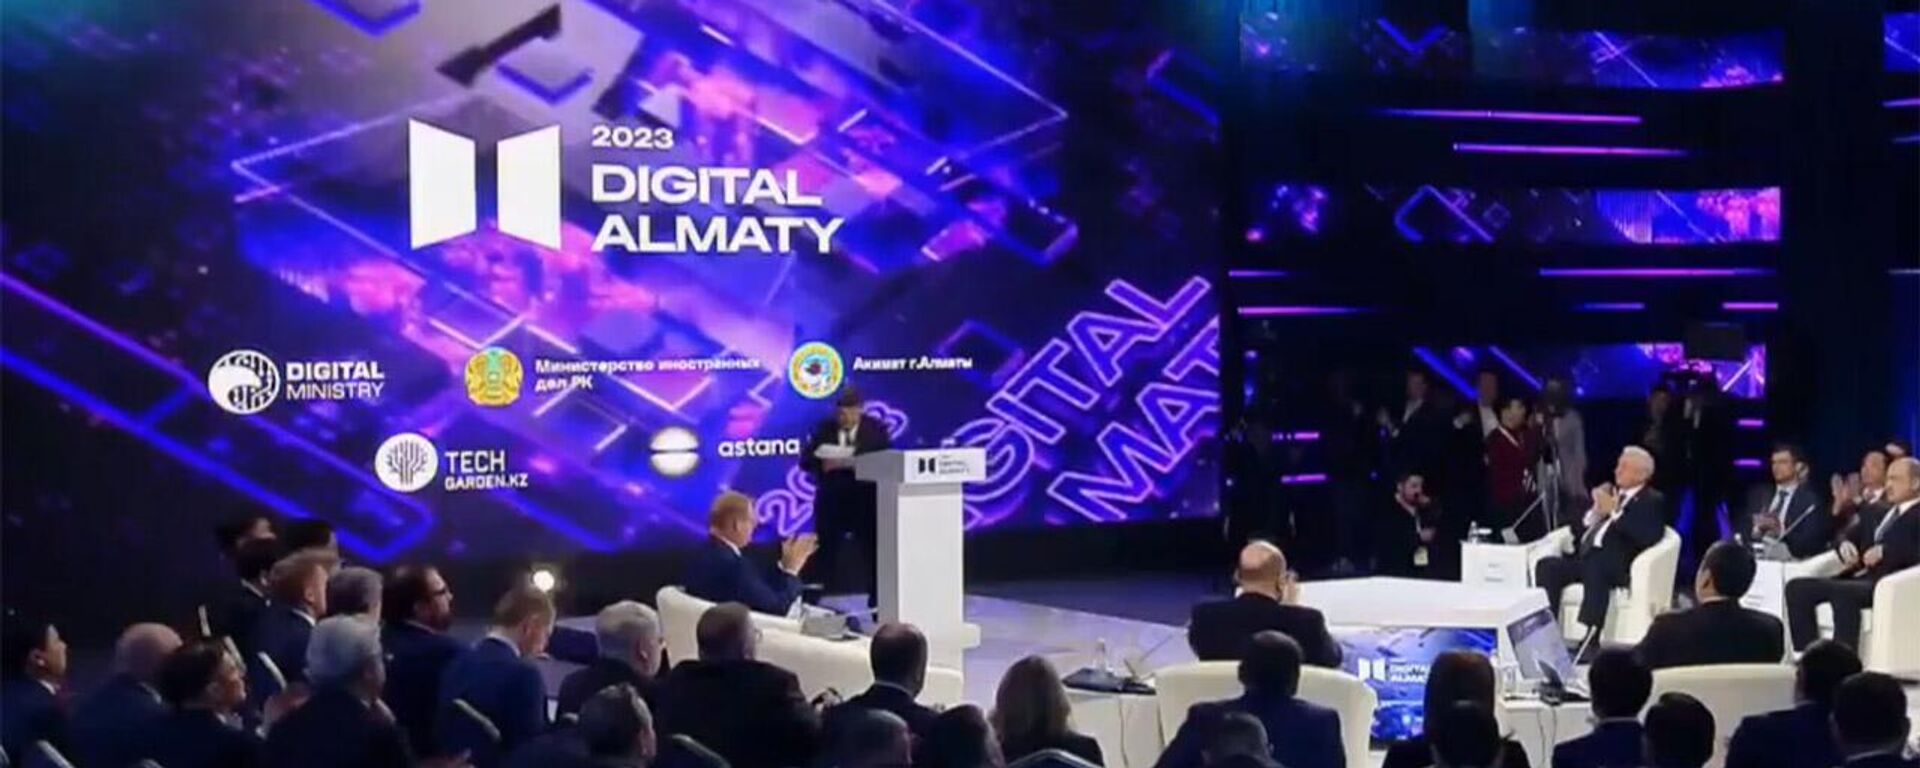 Заседание премьеров стран ЕАЭС и форум Digital Almaty 2023 — прямой эфир - Sputnik Кыргызстан, 1920, 03.02.2023